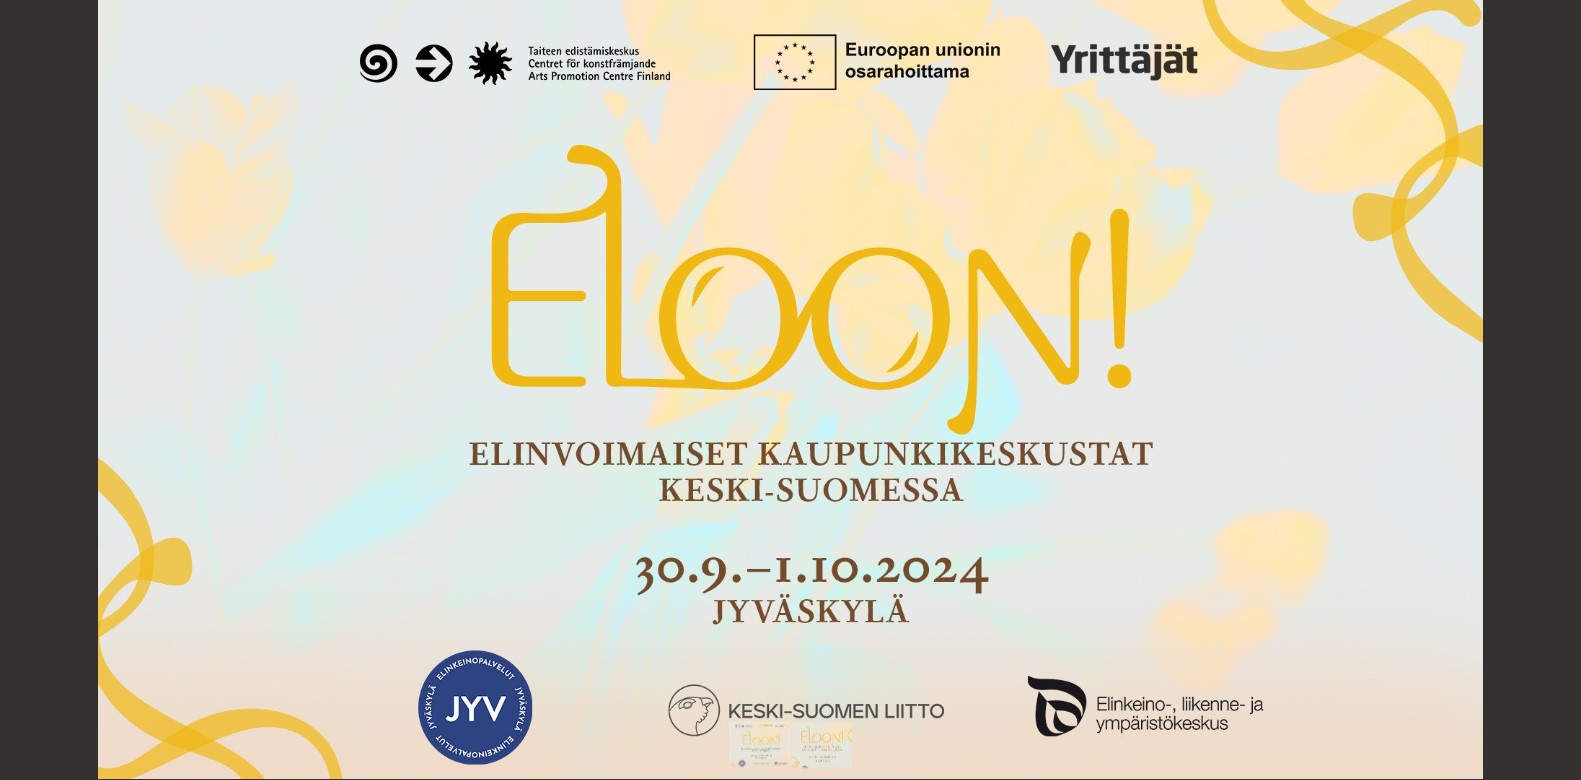 Eloon!-kiertue: Elinvoimaiset kaupunkikeskustat Keski-Suomessa